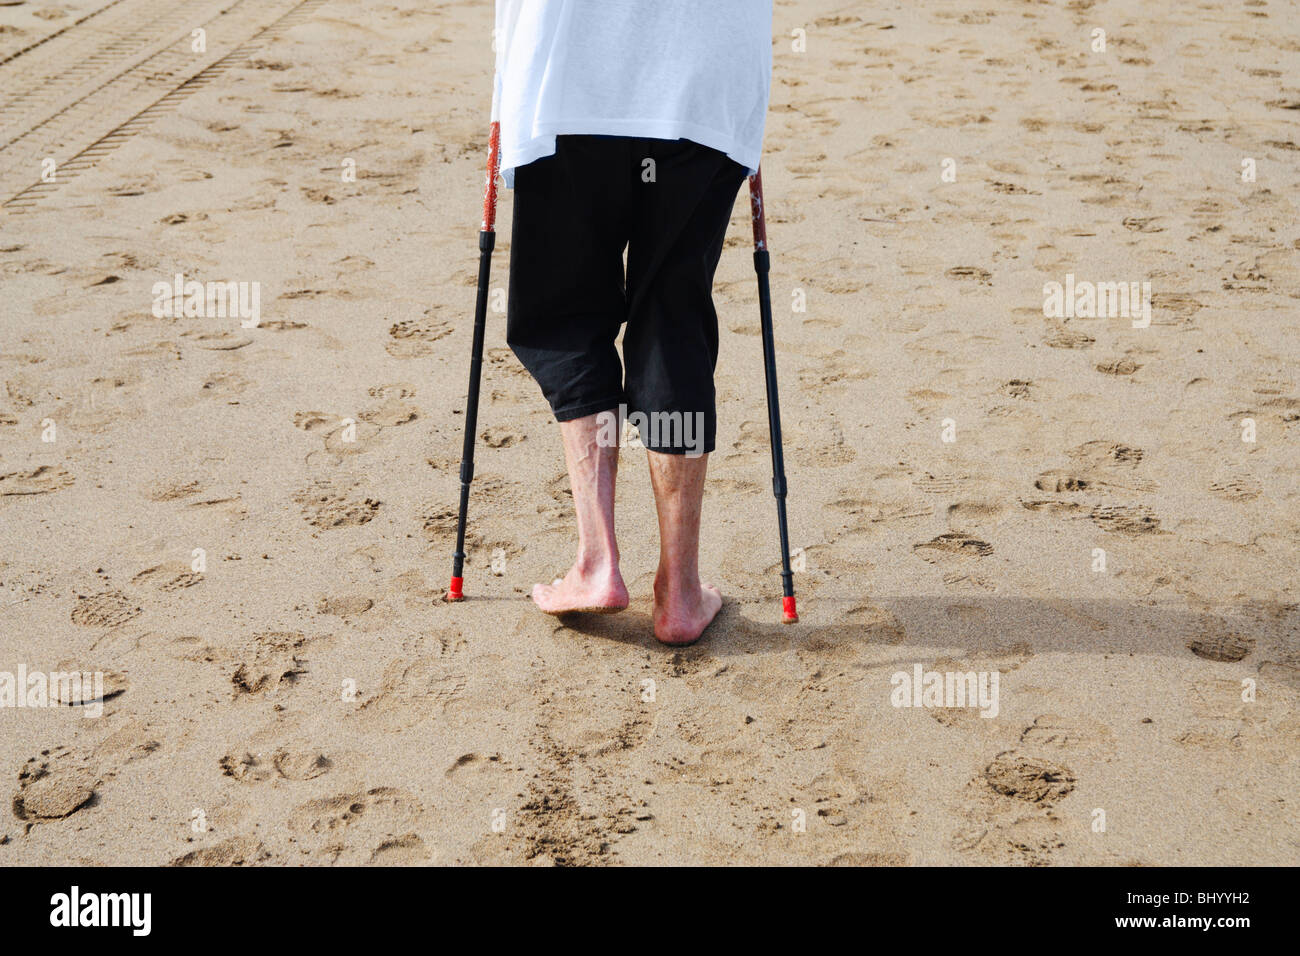 Elderly lady exercising on beach using walking poles Stock Photo